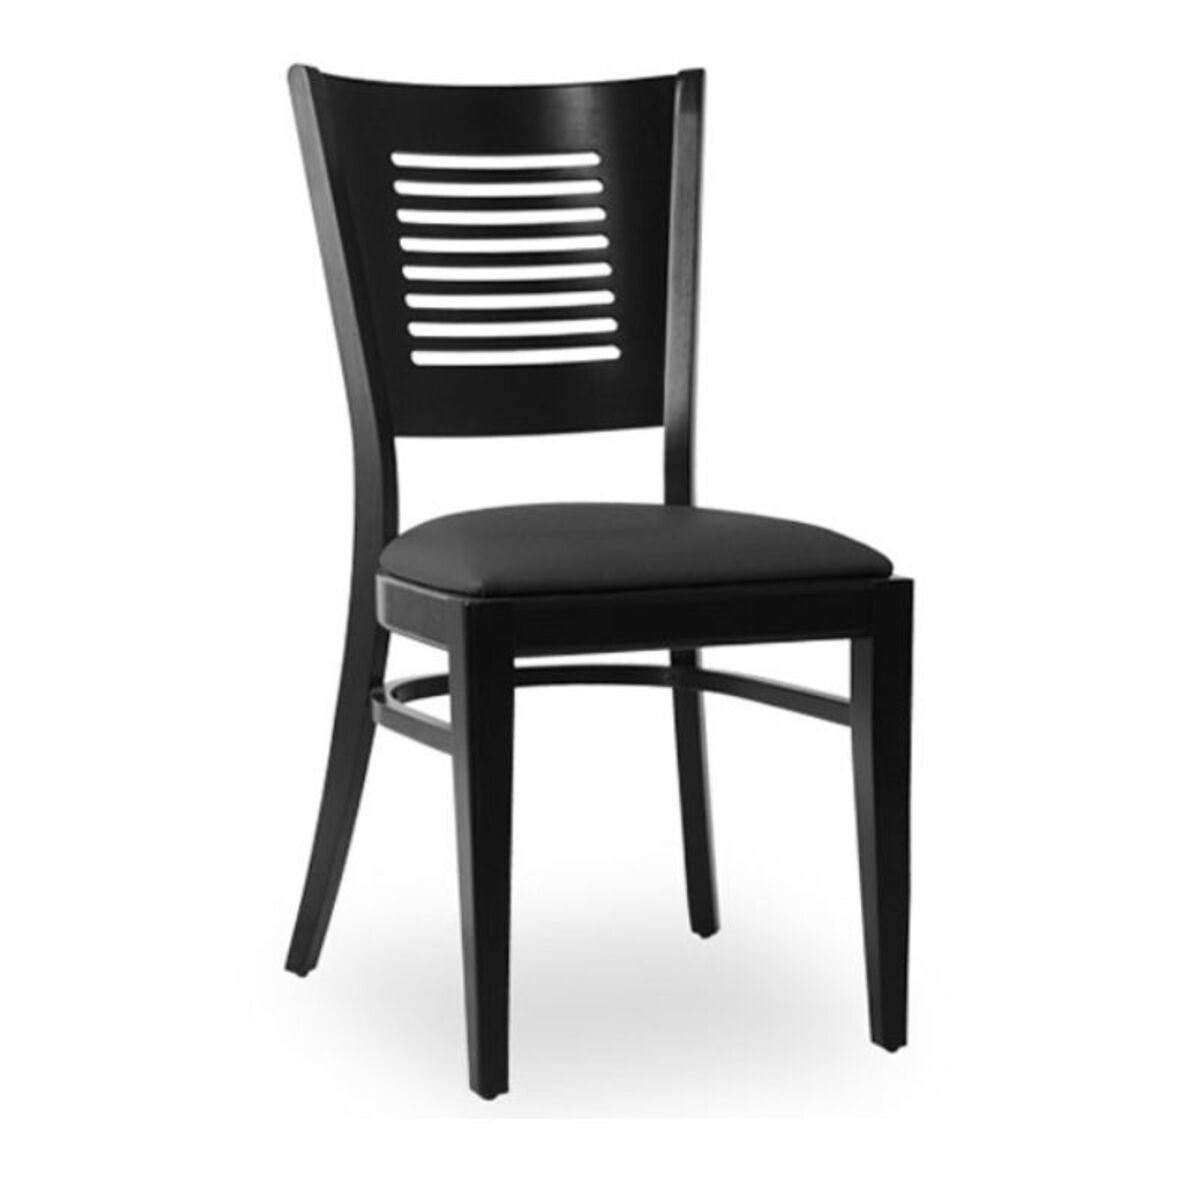 Chaise d’intérieur en bois avec assise rembourré en simili cuir noir